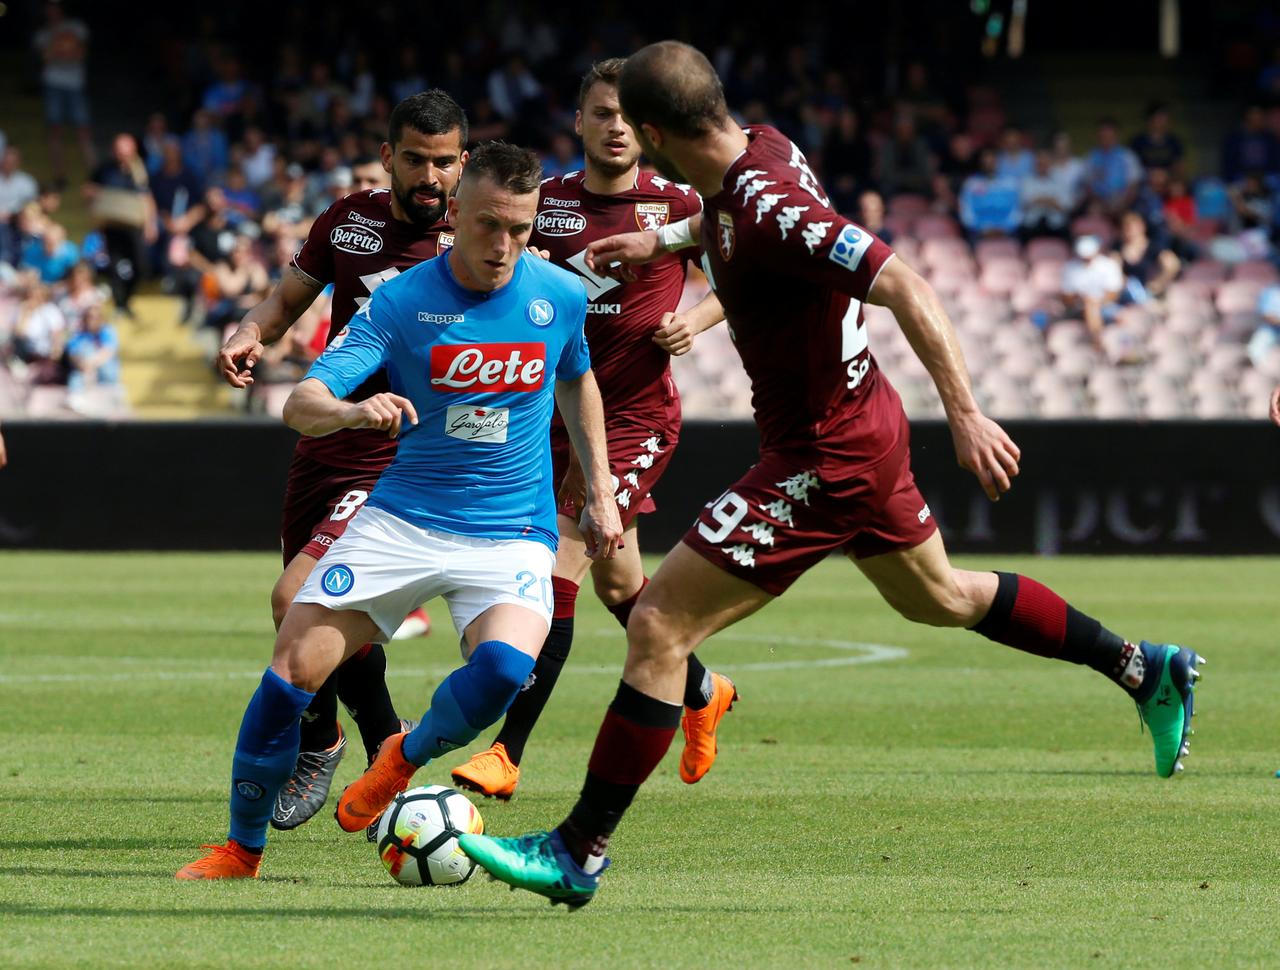 Nhận định Torino vs Napoli 23h30 ngày 26/04/2021